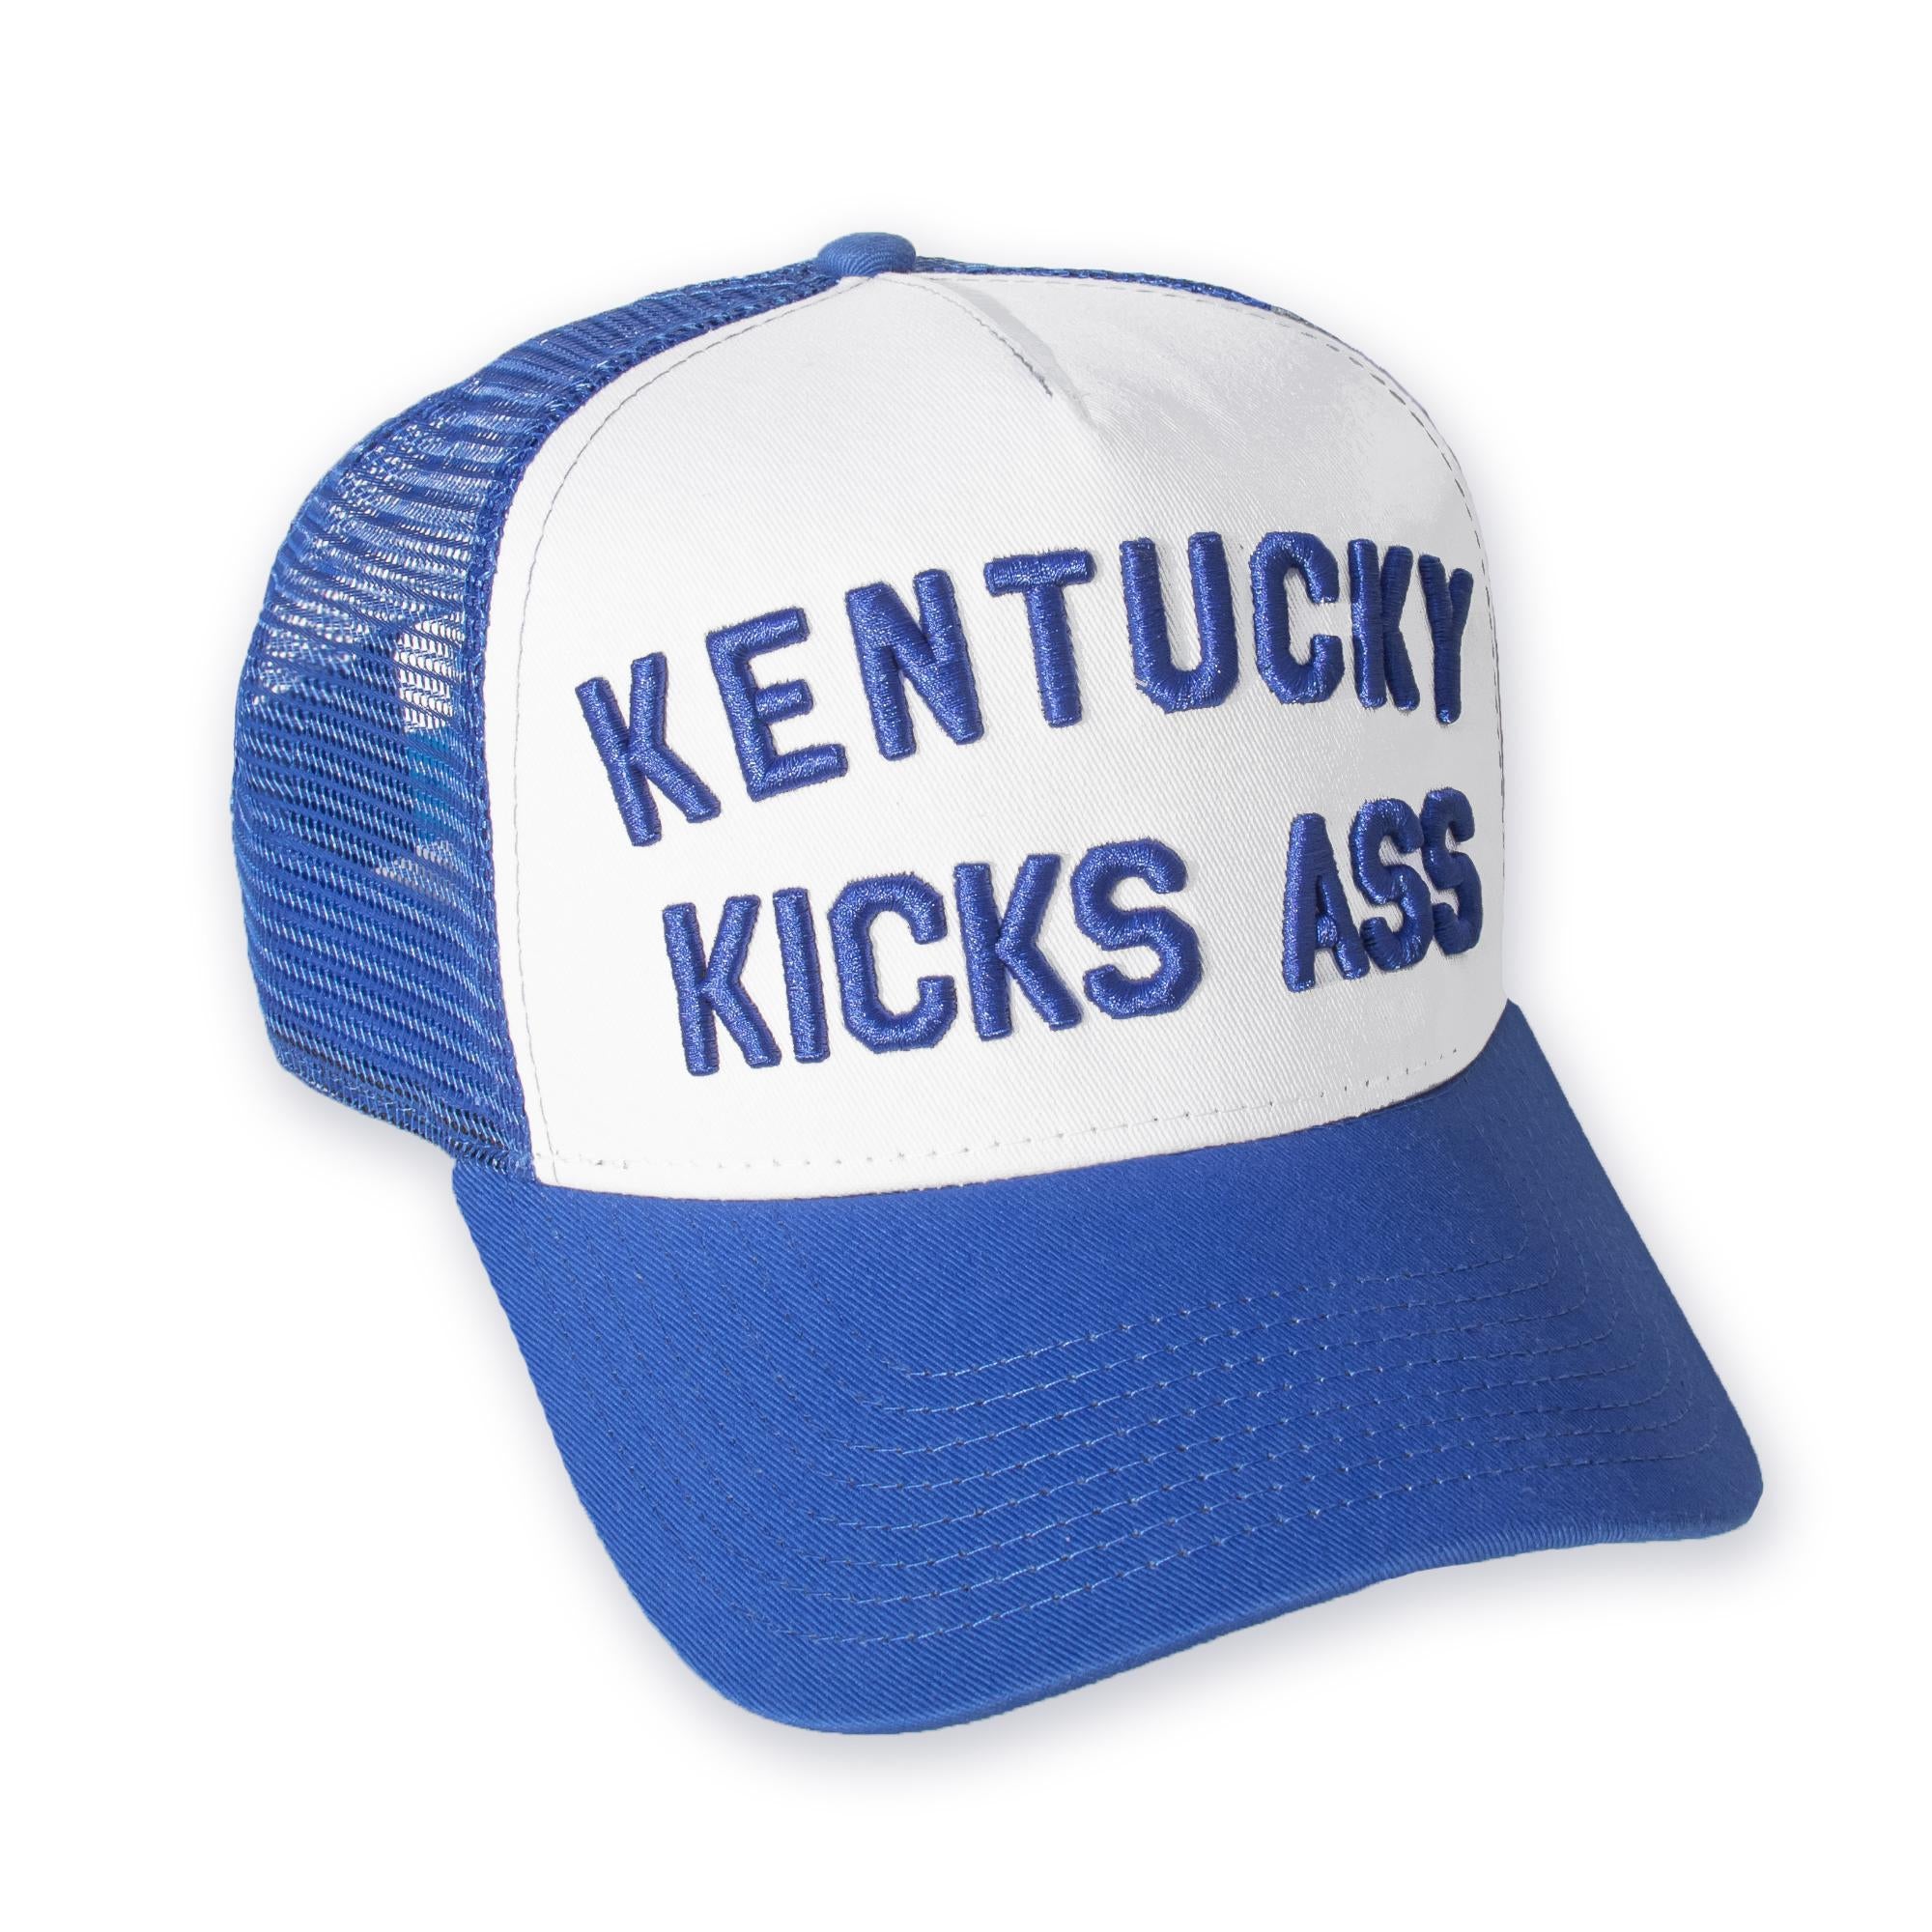 Kentucky Kicks Ass Trucker Hat (Royal)